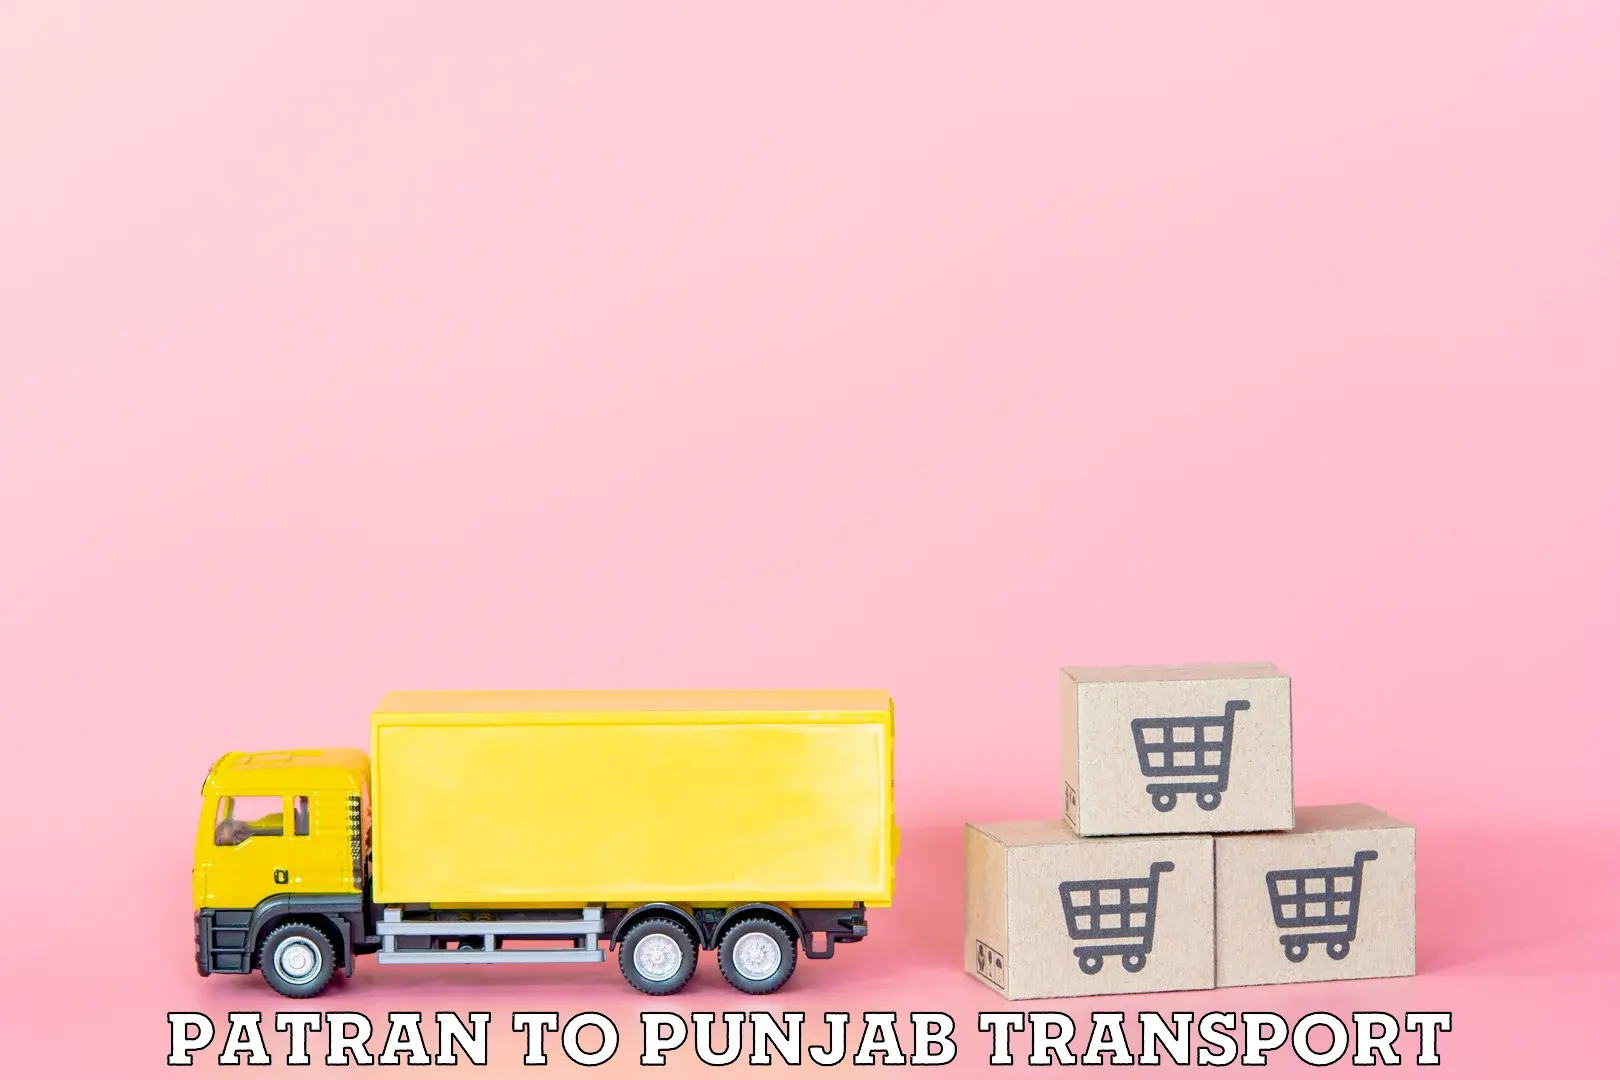 Nationwide transport services Patran to Punjab